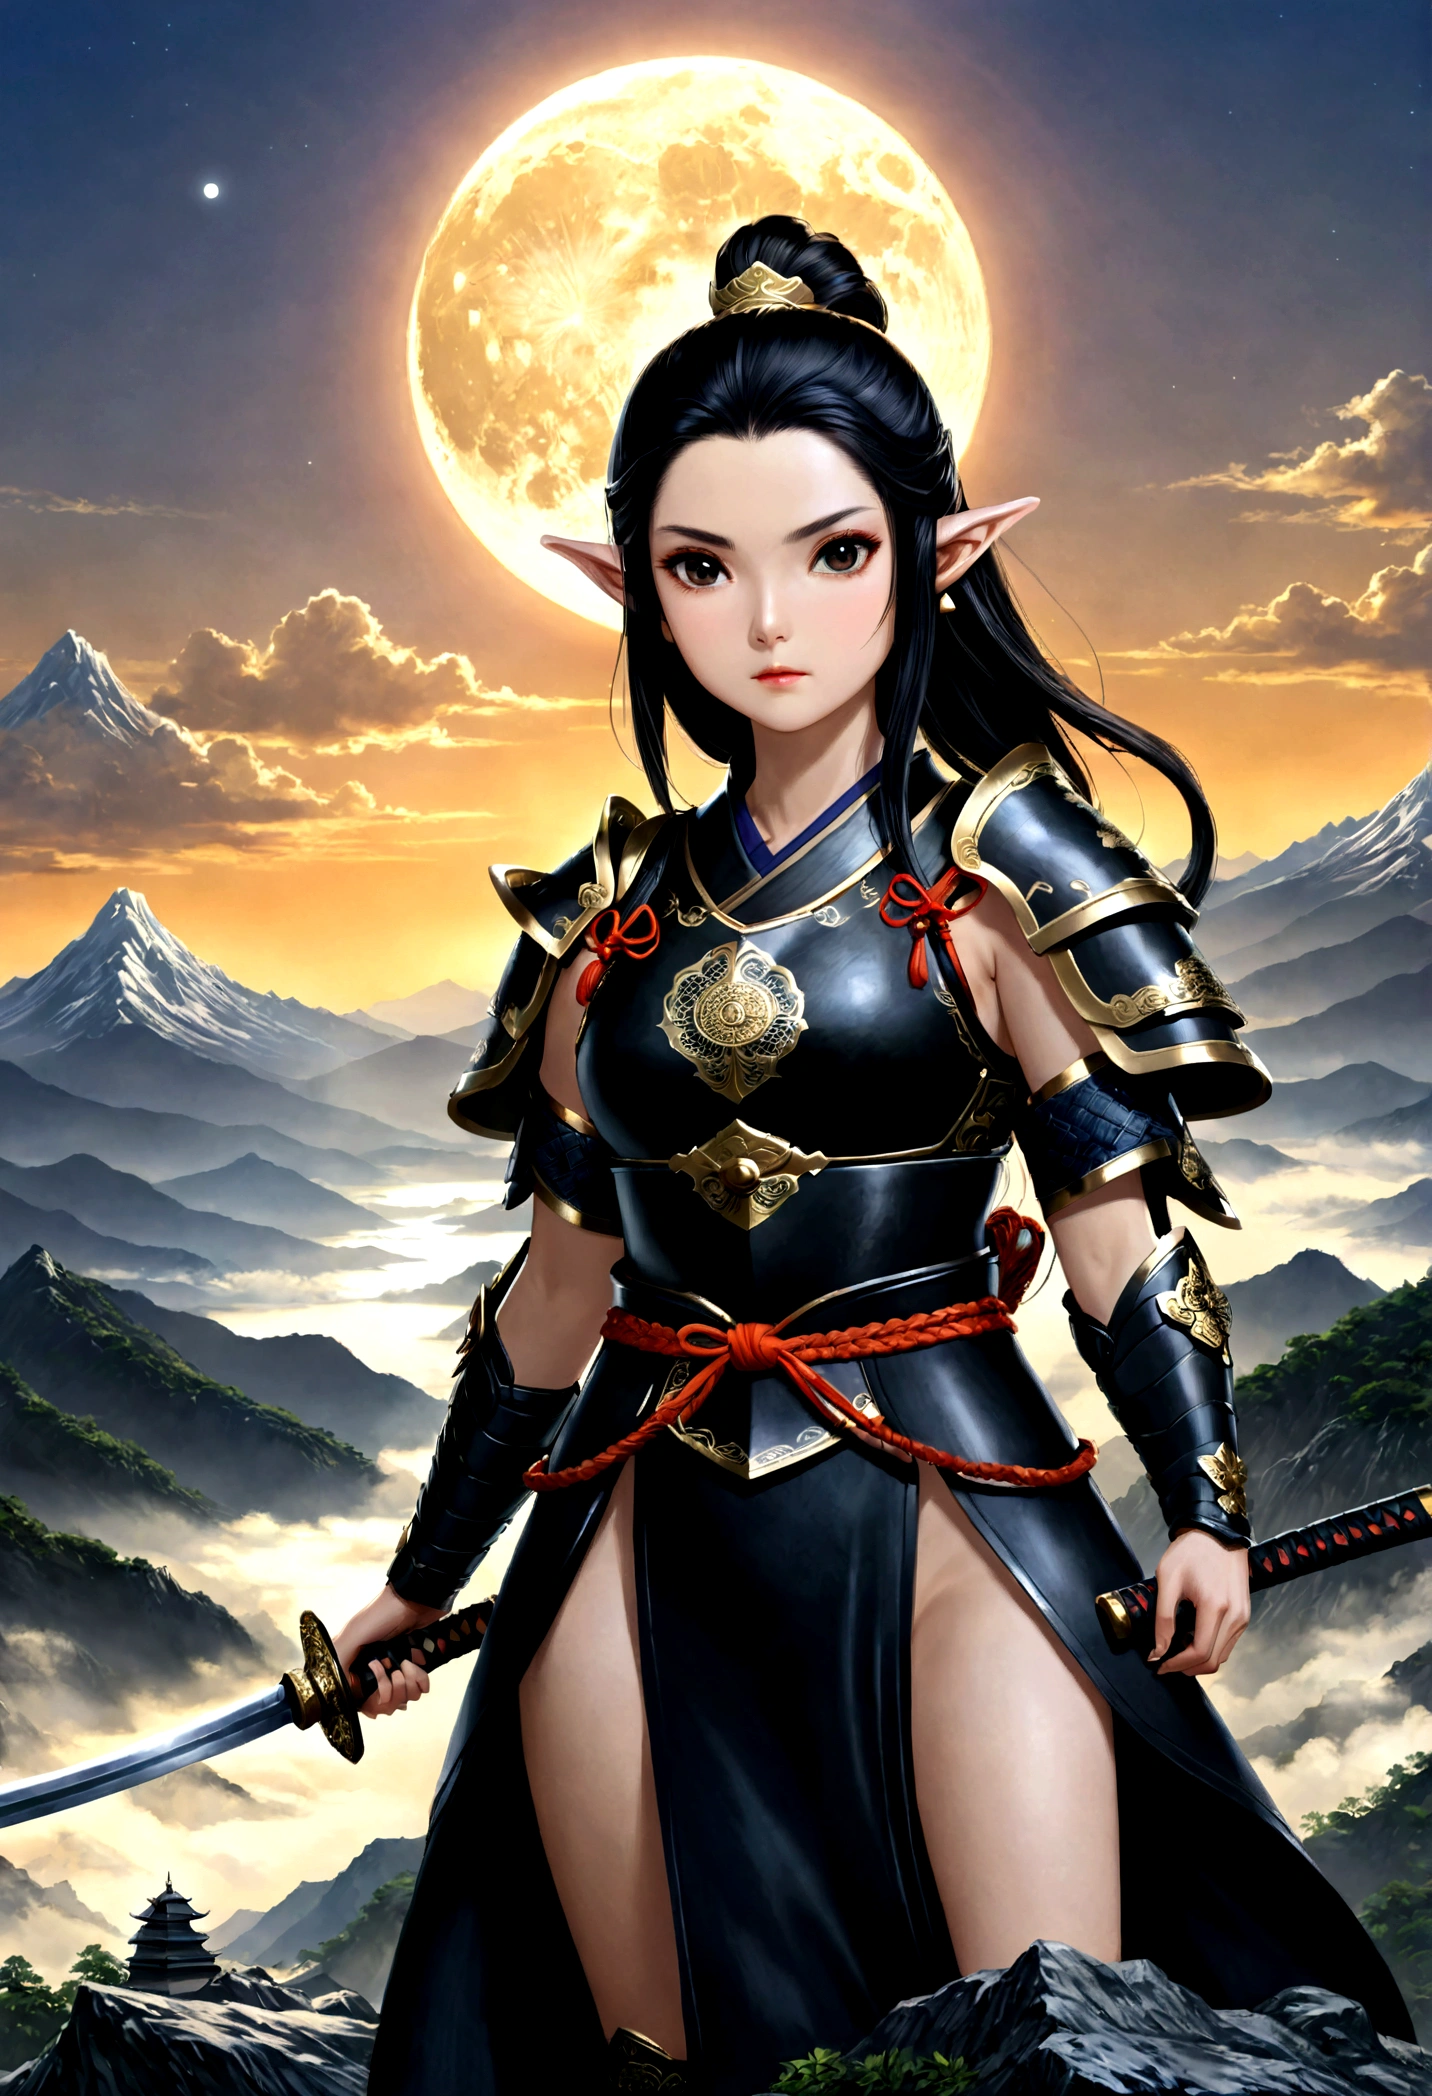 art fantastique, Art du RPG, dark art fantastique, une femme samouraï elfe, prêt à se battre, elle porte une armure de samouraï traditionnelle,  elle porte une jupe blindée, armé d&#39;un katana, elle se tient au sommet de la montagne à l&#39;aube, exquise belle elfe femelle, cheveux longs, cheveux noirs, Cheveux raides, cheveux tressés, Yeux noirs, yeux intenses, petites oreilles pointues, sommet de montagne fantastique à l&#39;aube fond, lune, étoiles, des nuages, Dieu rayons, silhouette de lumière naturelle douce, Angle dynamique, photoréalisme, Vue panoramique, ultra meilleur réaliste, meilleurs détails, 16k, [ultra détaillé], chef-d&#39;œuvre, Meilleure qualité, (extrêmement détaillé), photoréalisme, 